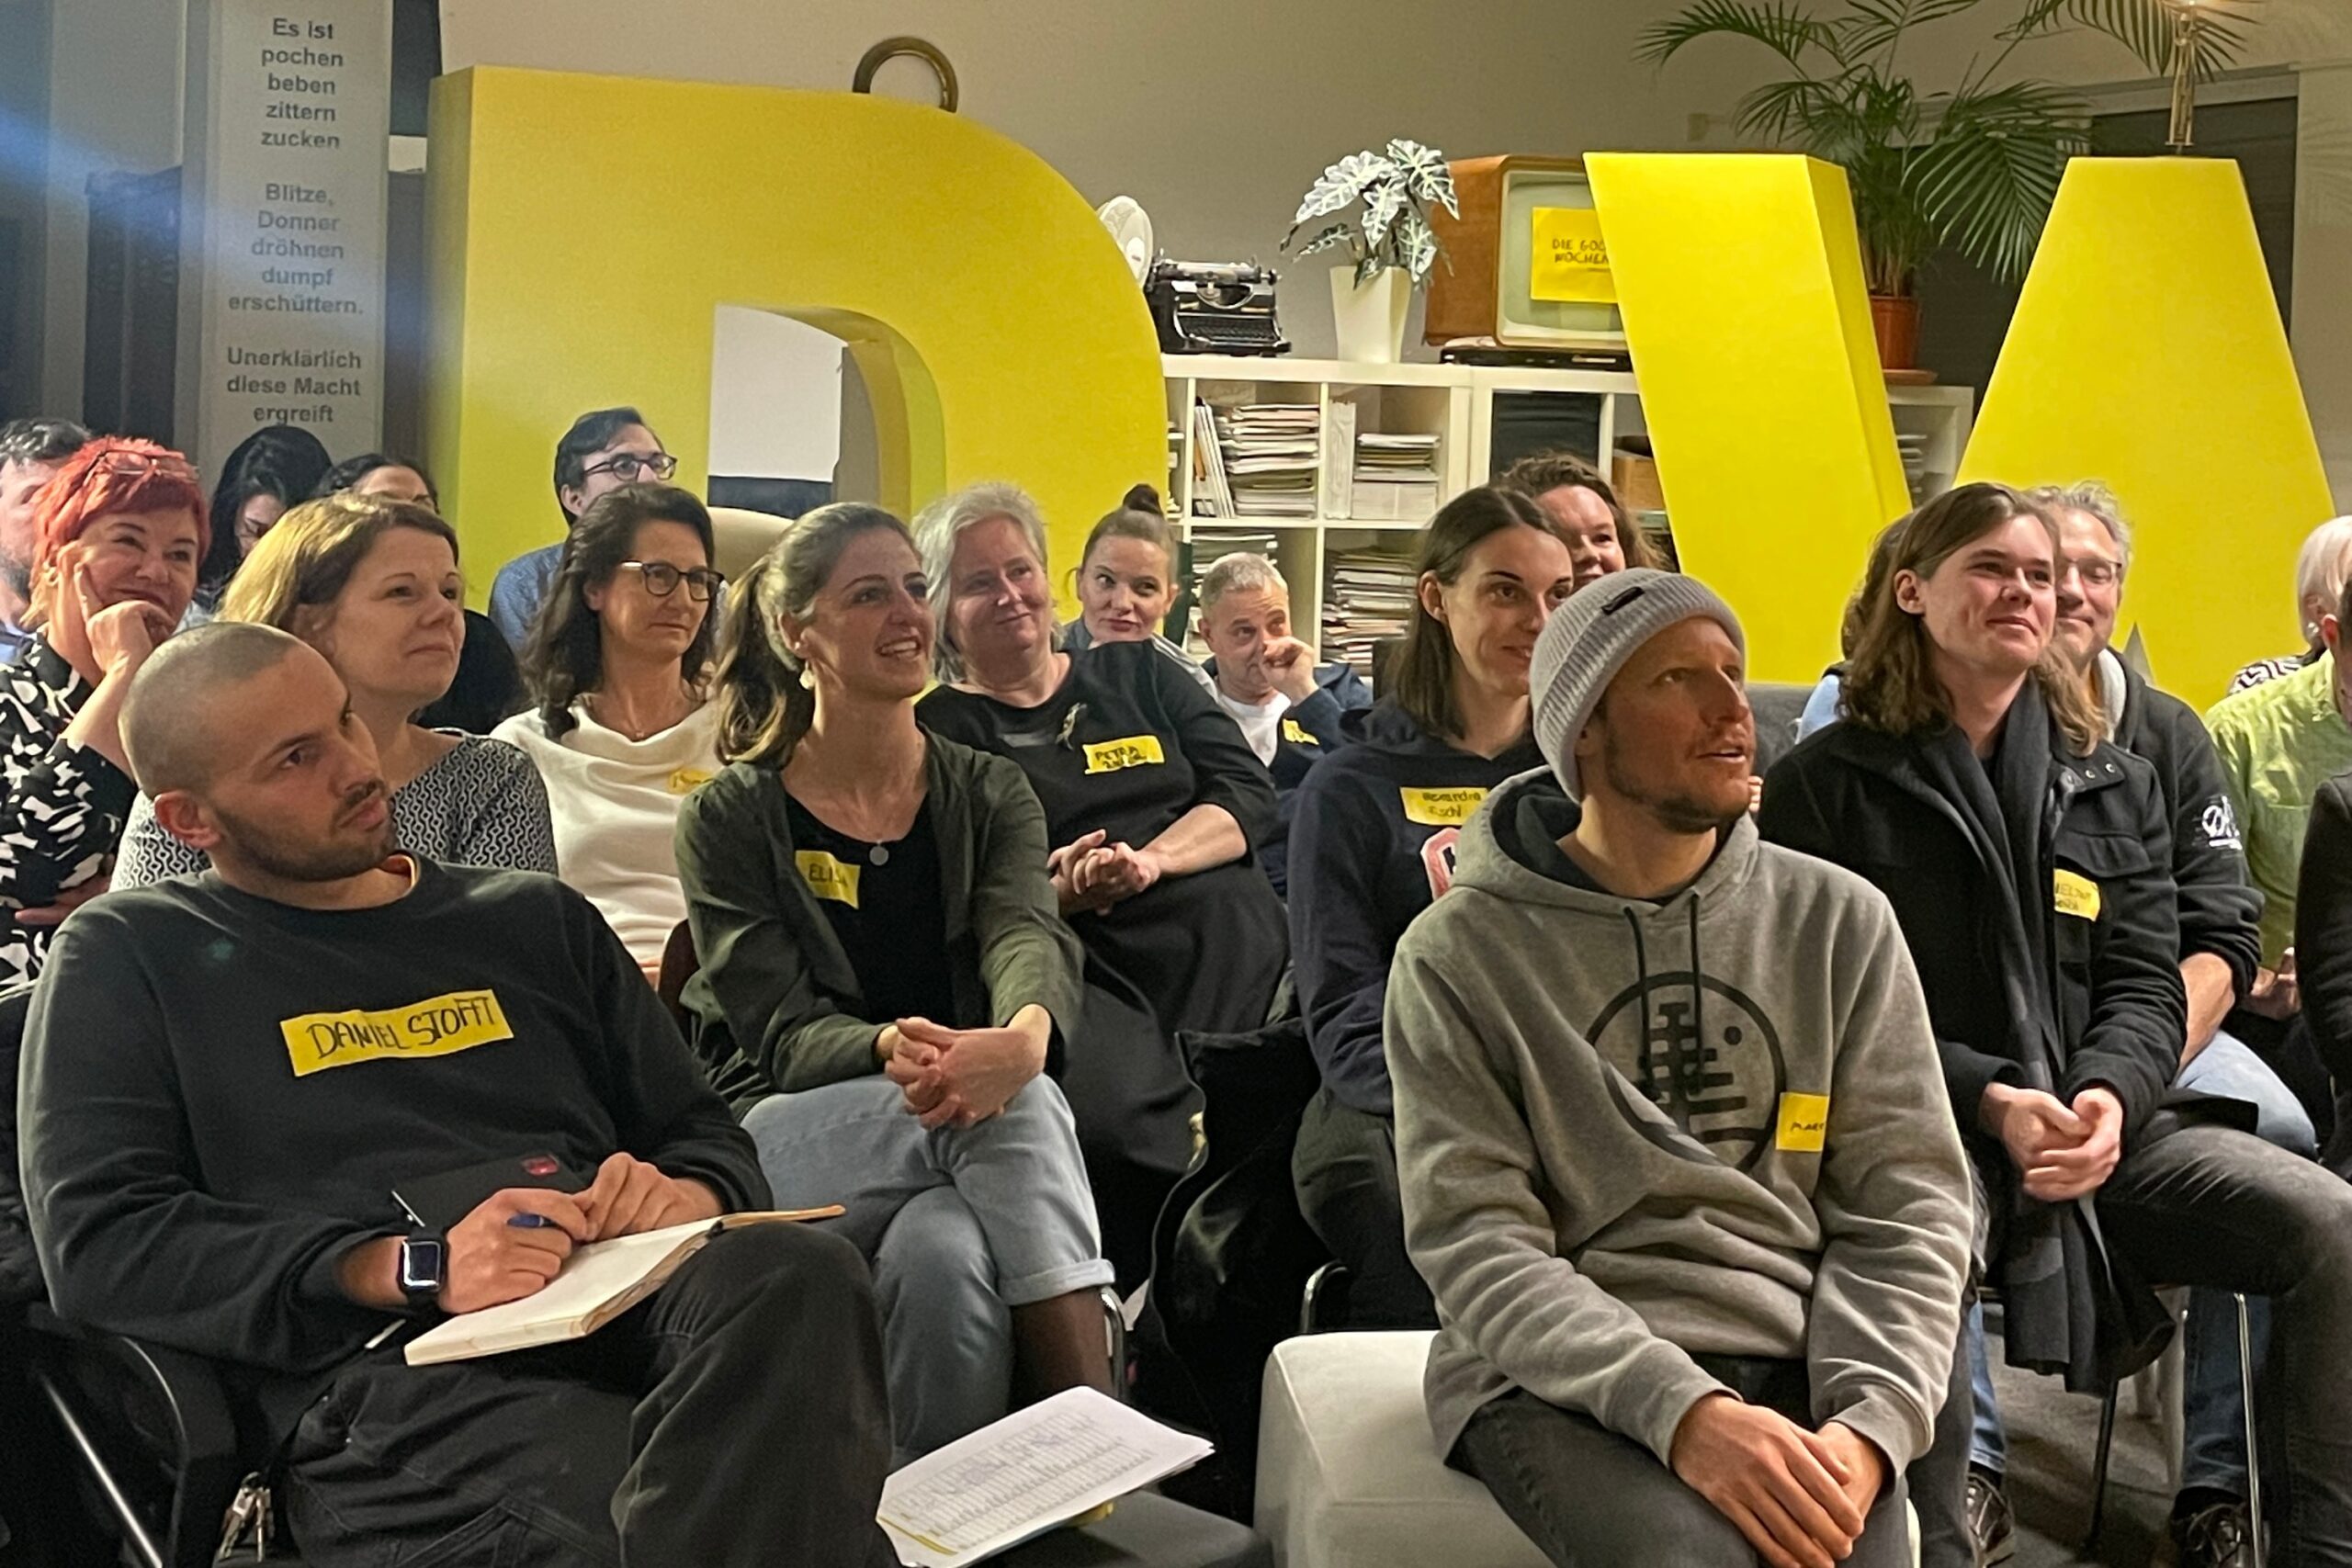 100 Ideen gesucht: COWORKINGSALZBURG startet „Do What You Love” Programm